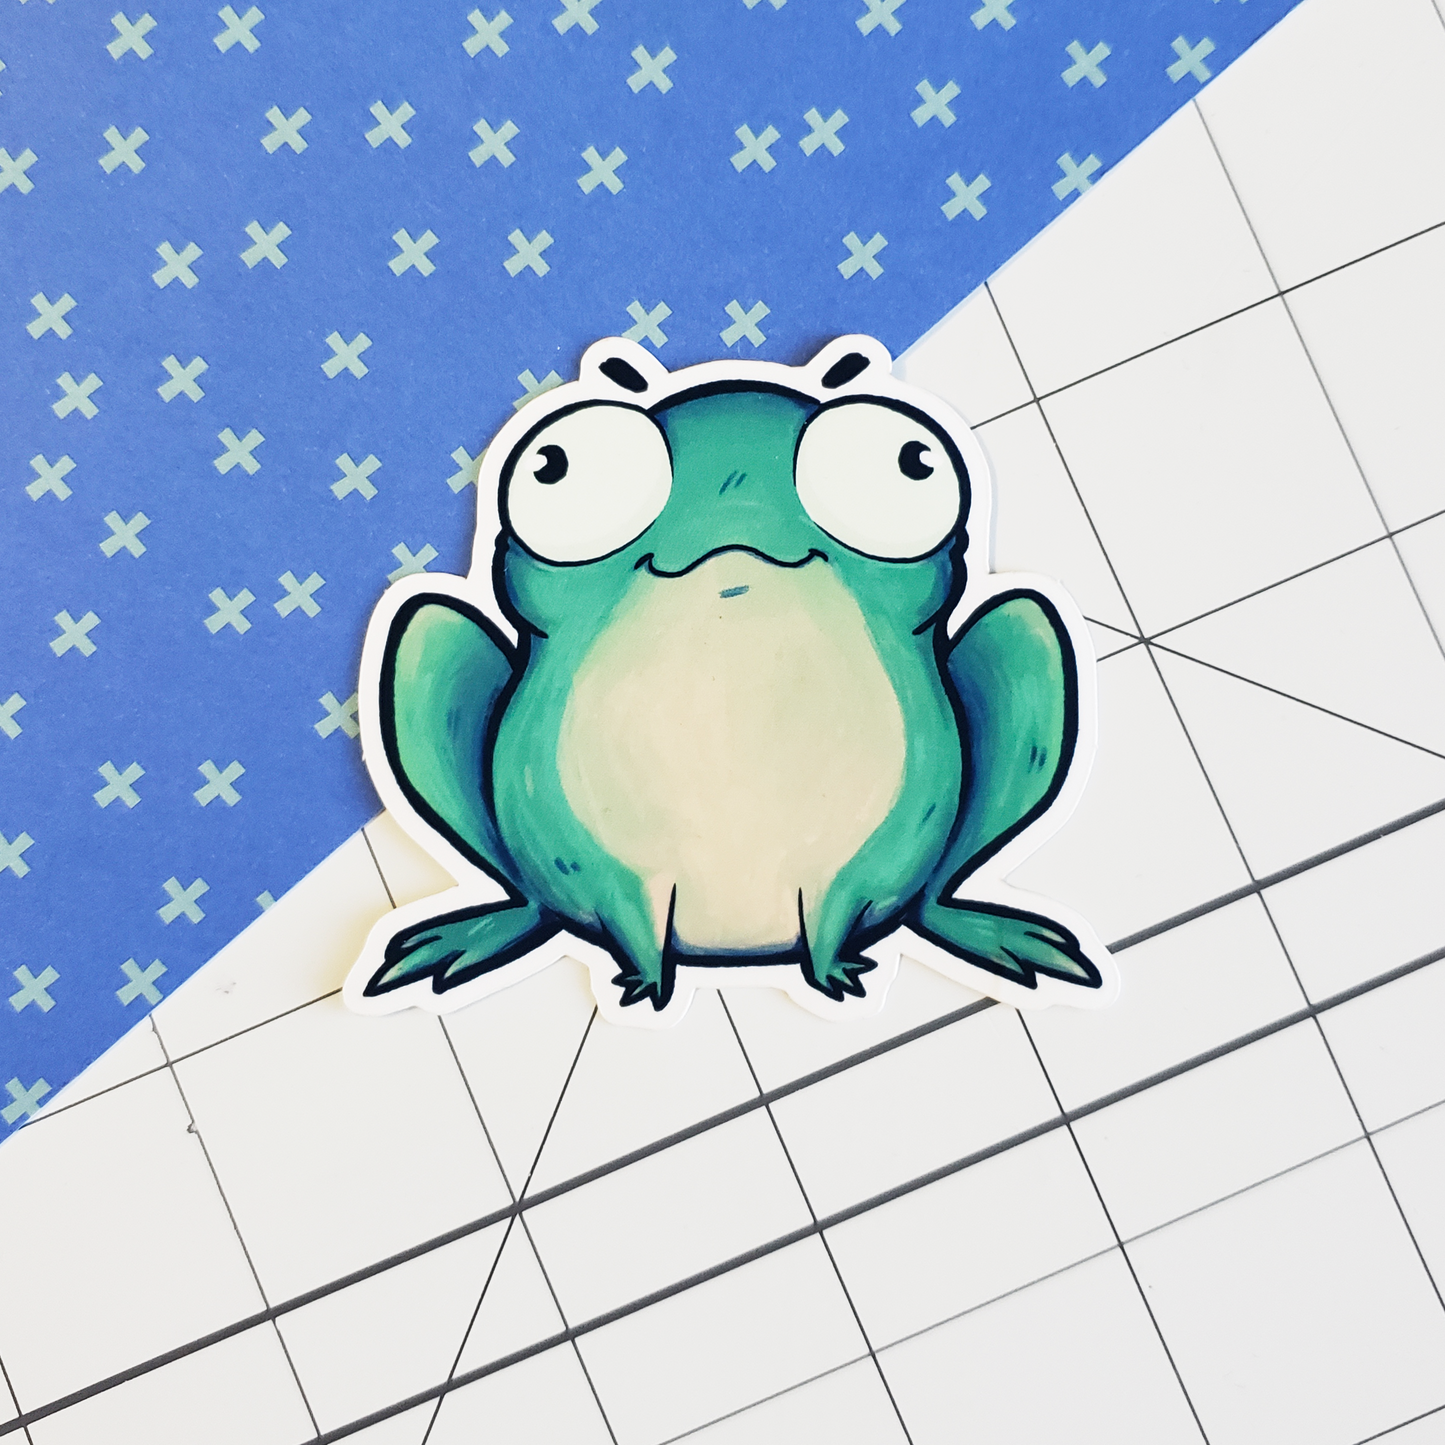 Frog - Sticker